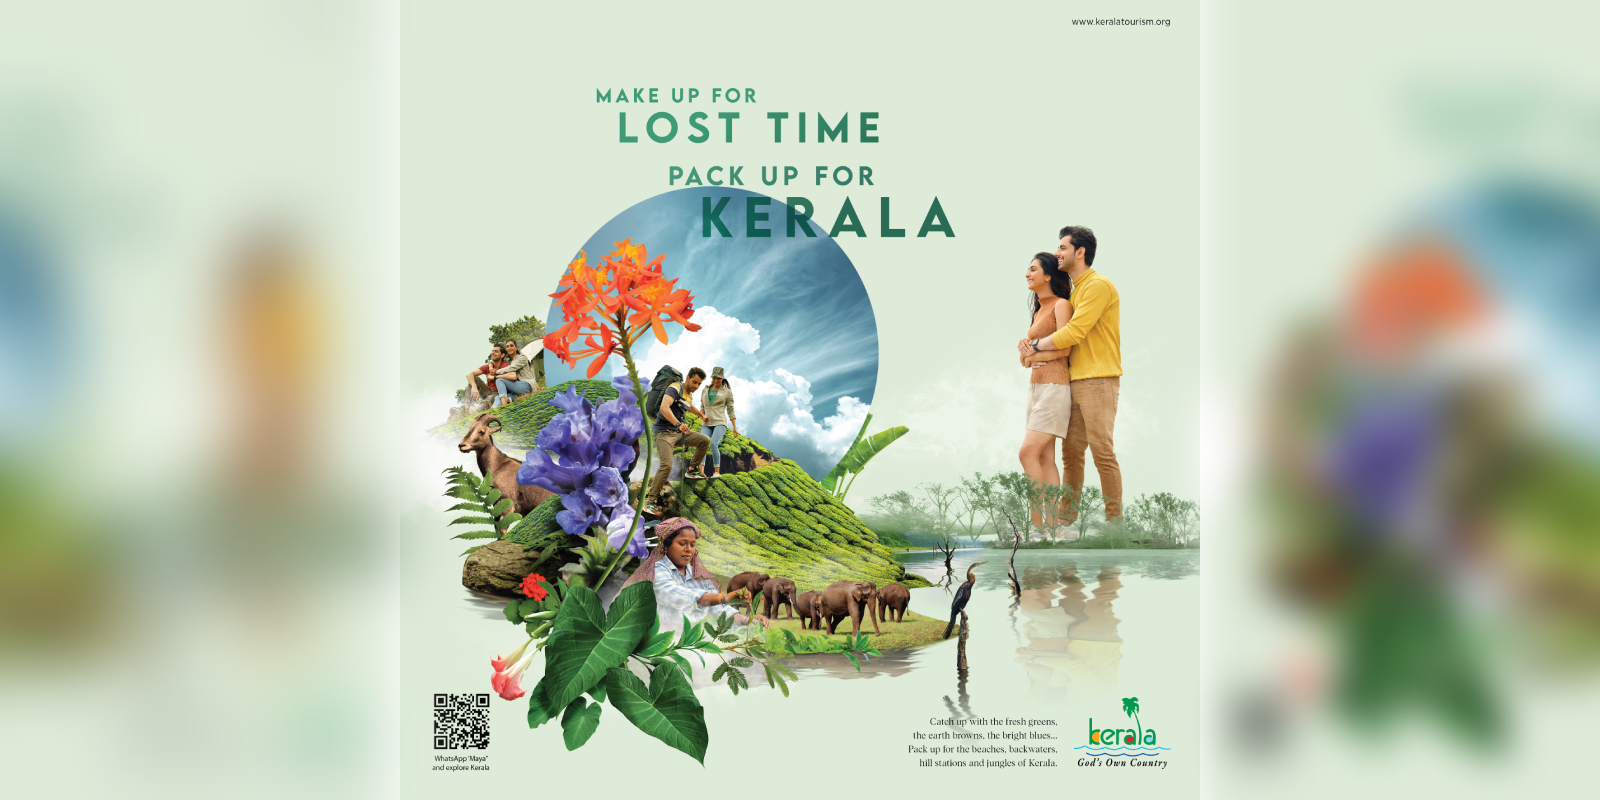 Kerala tourism wins PATA award